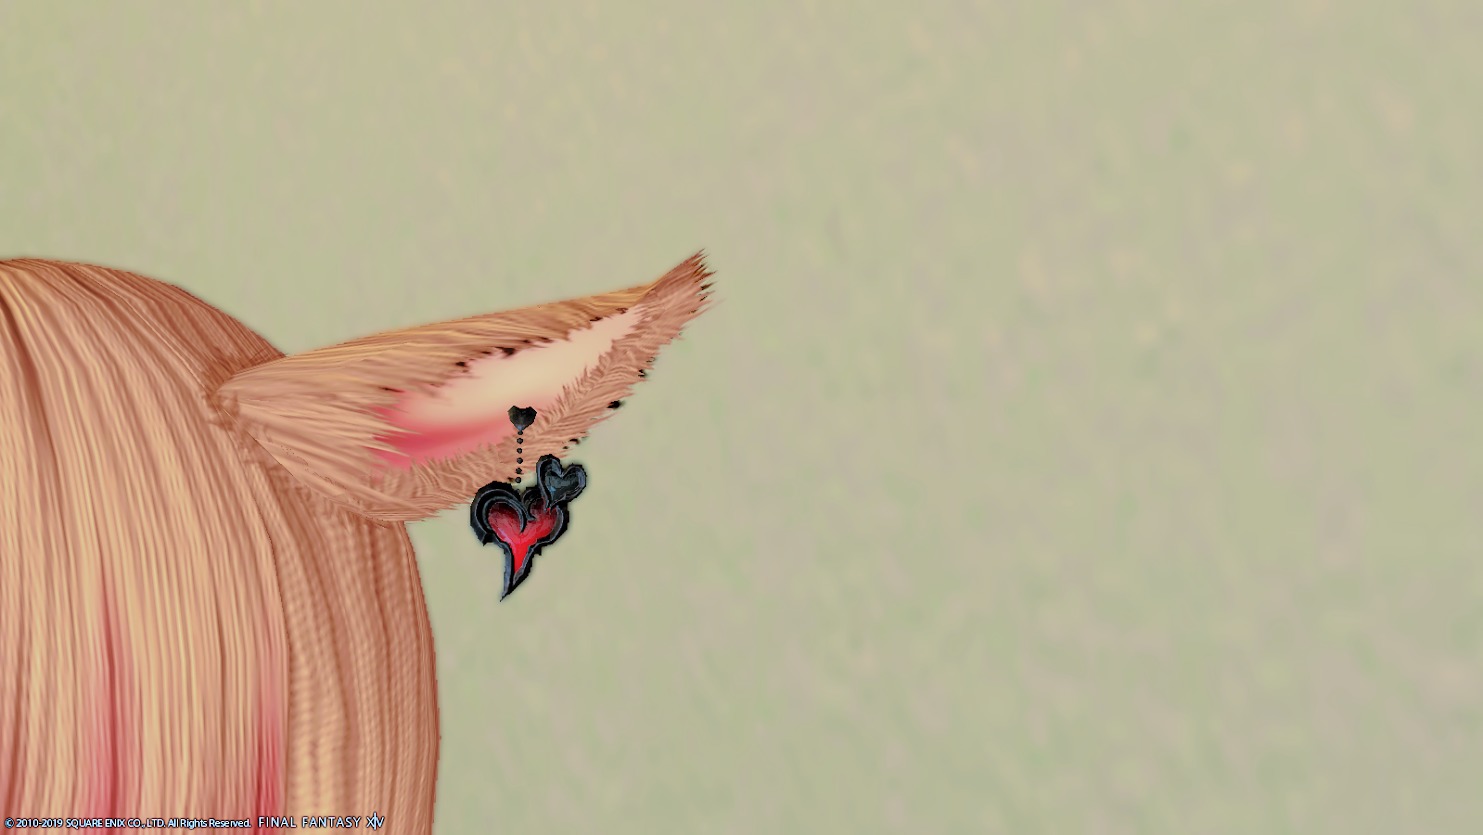 Ff14 ハート型の耳飾り パラムールイヤリング プラチナパラムールイヤリングの詳細 Ff14ブログりおの桜庵